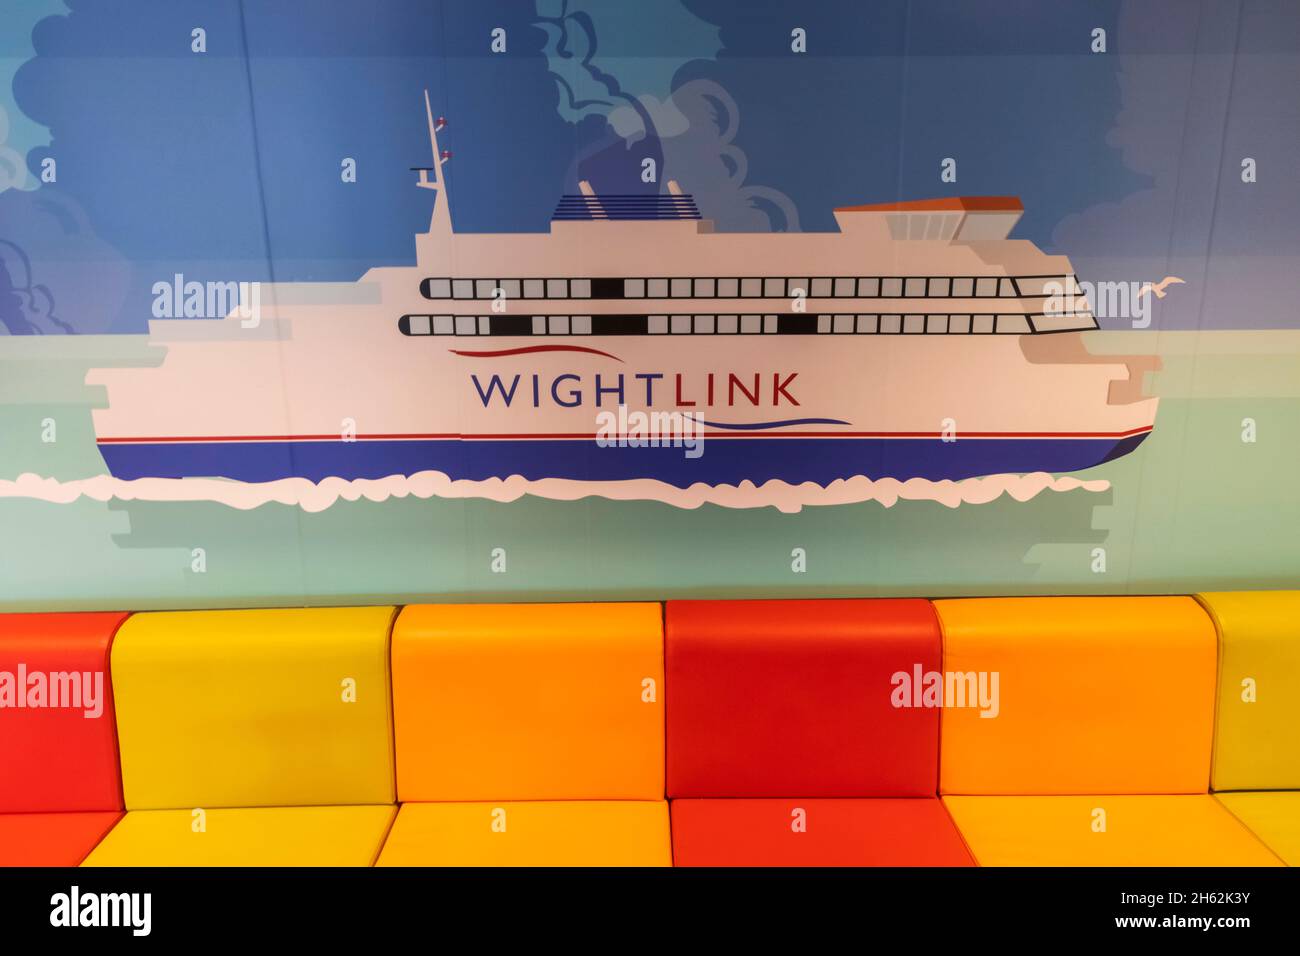 england, die Insel wight, yarmouth, das wightlink victoria von wight mit Auto- und Passagierfähre, farbenfrohe Innenansicht des Lounge-Bereichs für Kinder Stockfoto